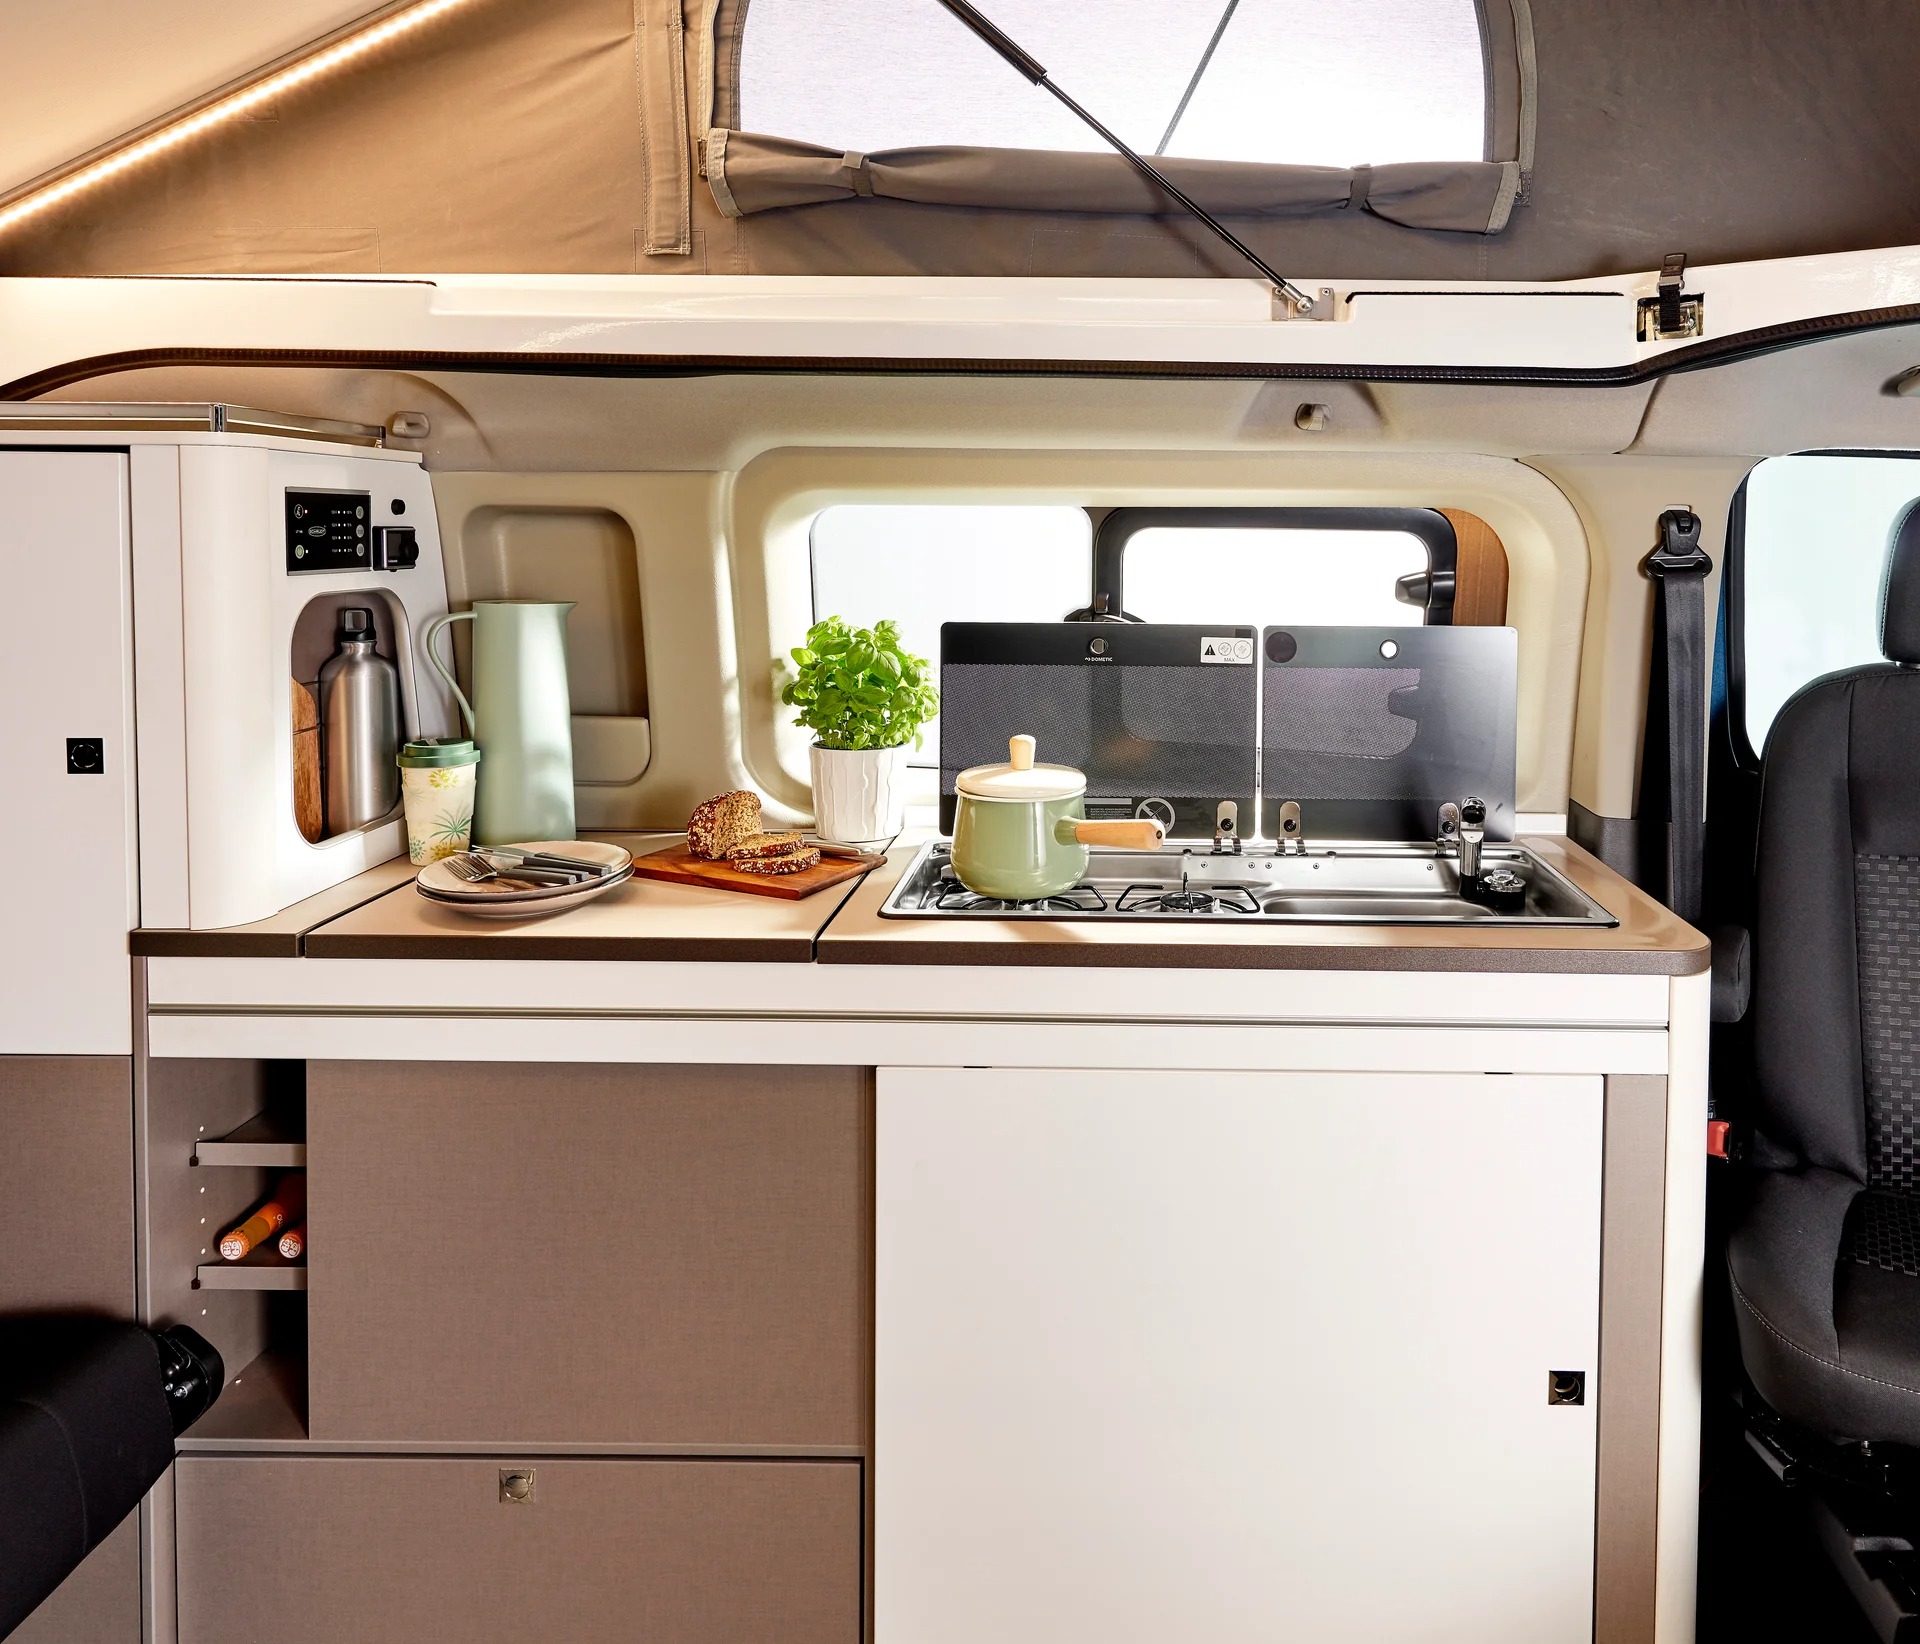 Litet kök i en kompakt husbil. Taket är upplyft och man ser tältduk med ett fönster som täcker.